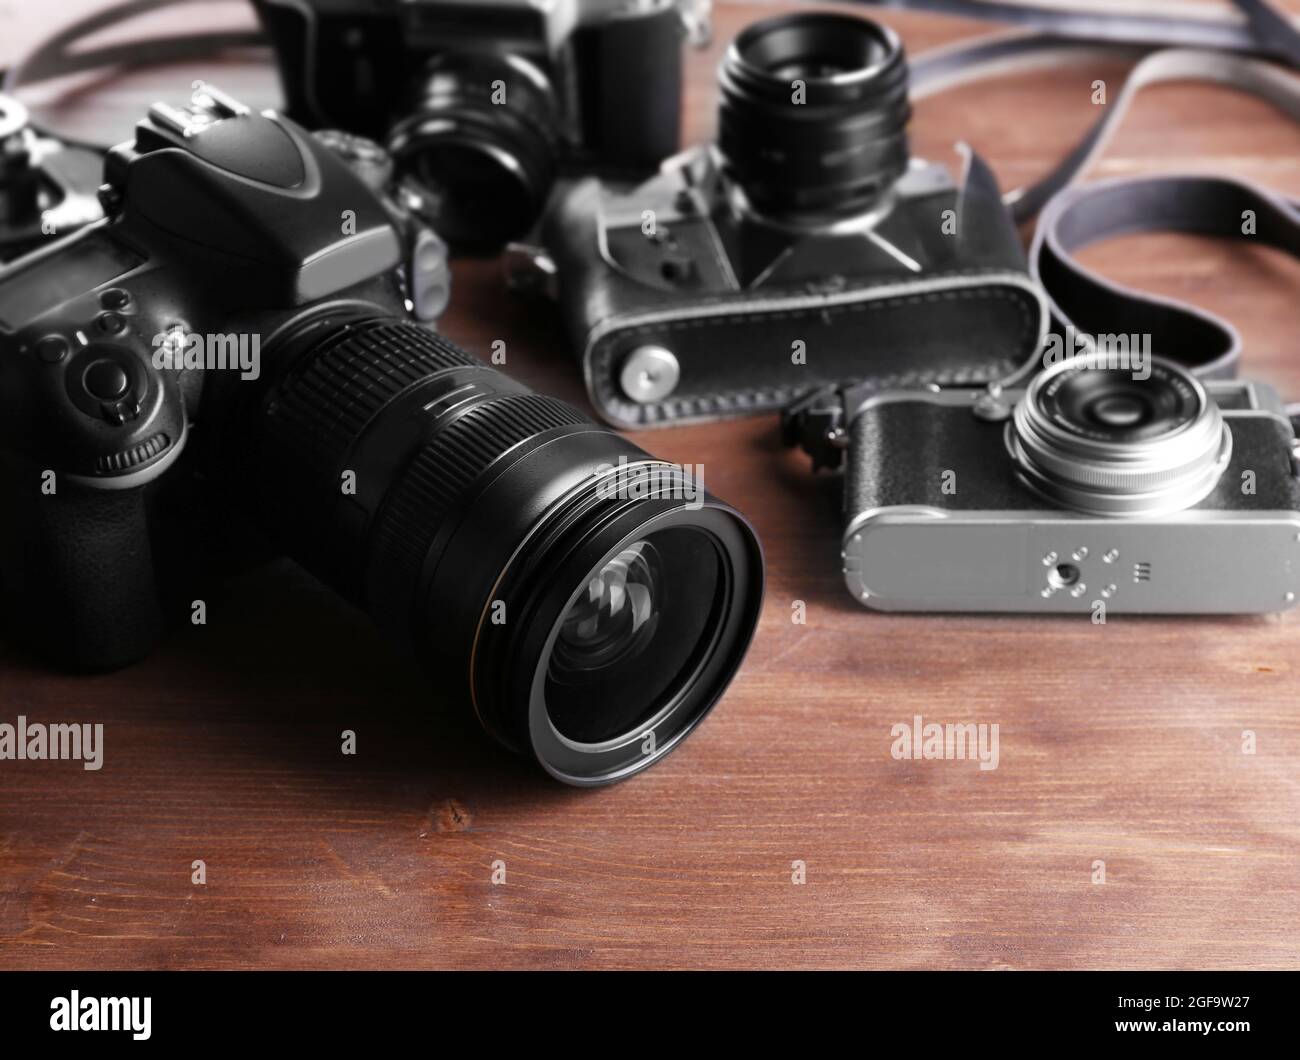 Valiente Sierra Unir Las cámaras modernas y retro sobre fondo de madera Fotografía de stock -  Alamy